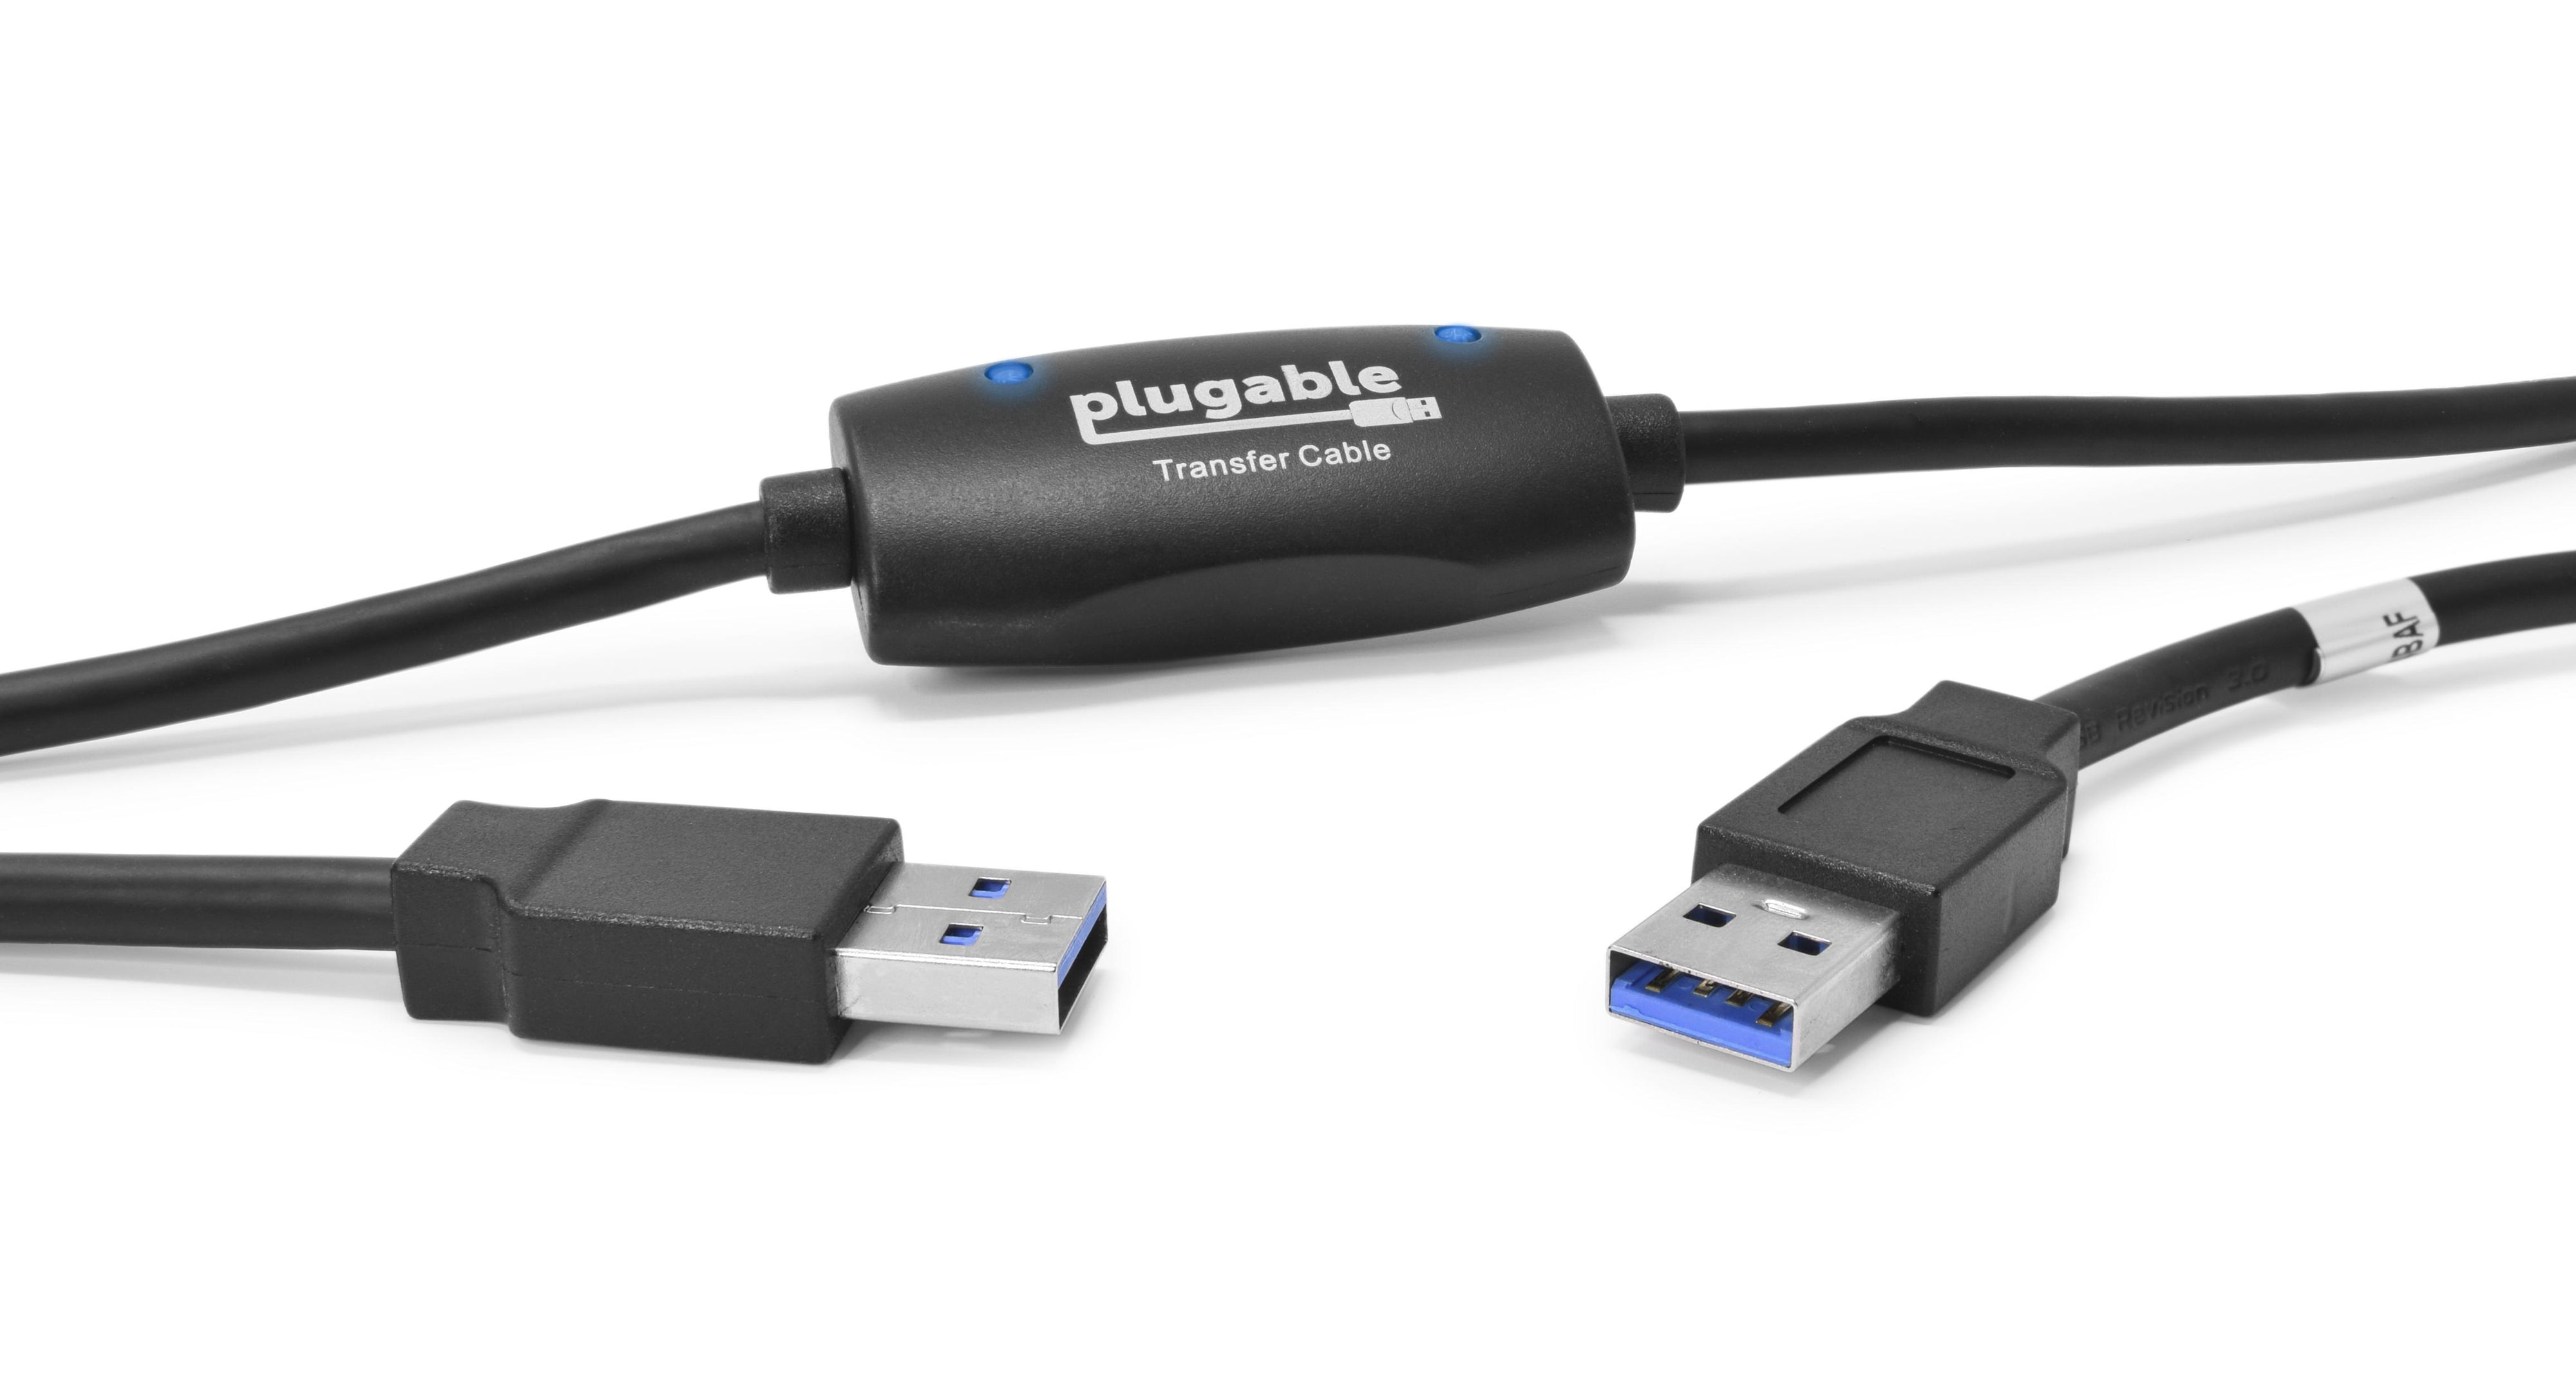 Plugable USB3-TRAN USB 3.0 Transfer Cable